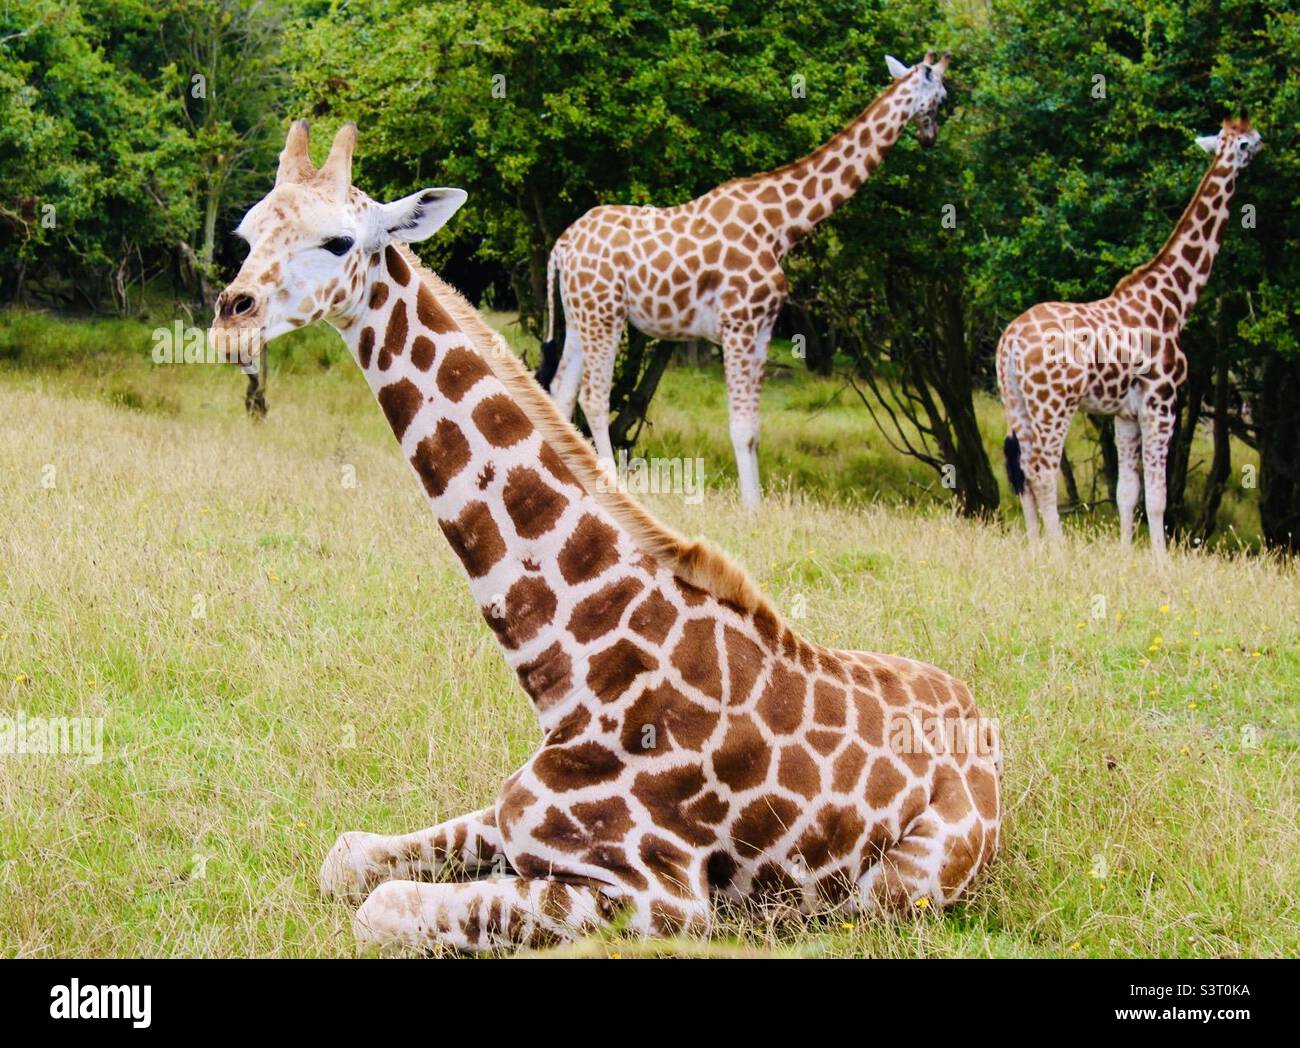 Young giraffe laying down Stock Photo